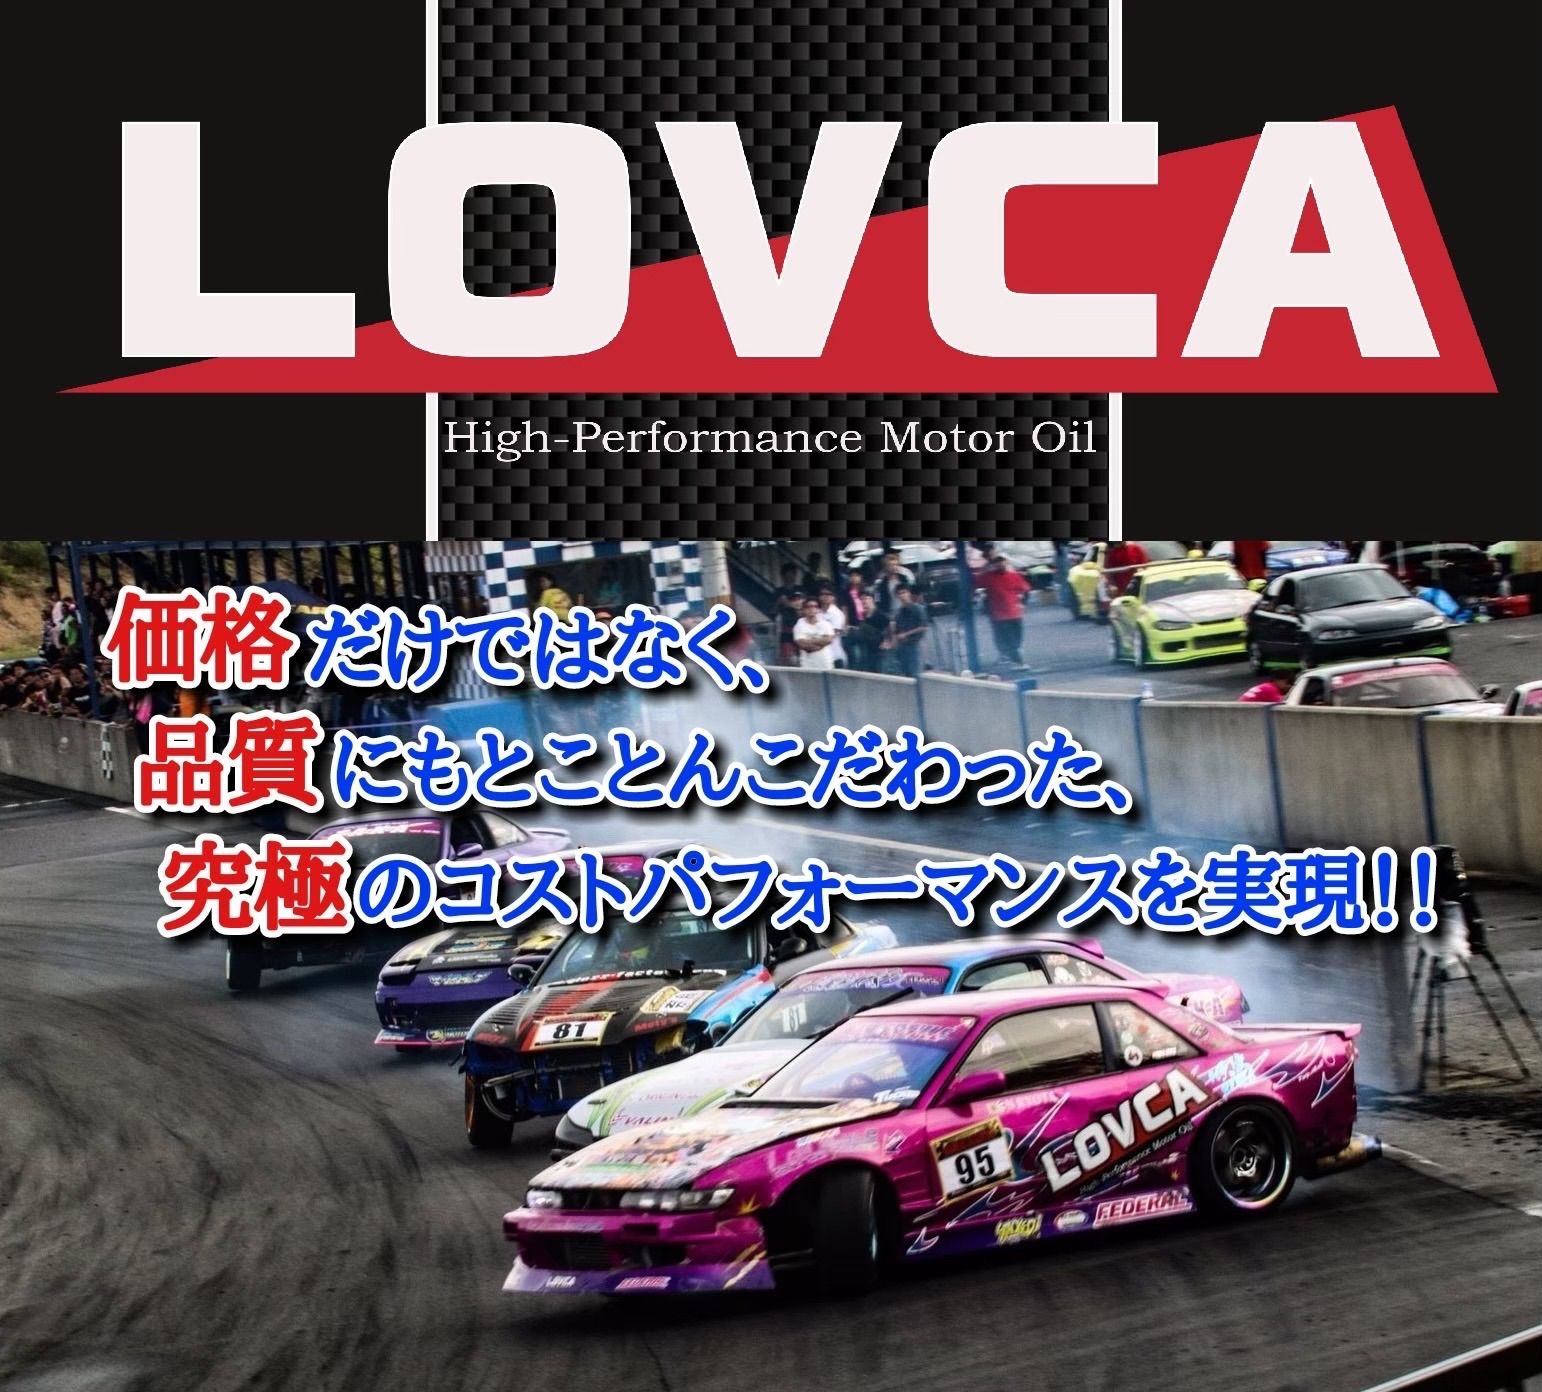 希望小売価格★送料無料★ LOVCA HIGH-STNDARD 5W-30 6L 日本製